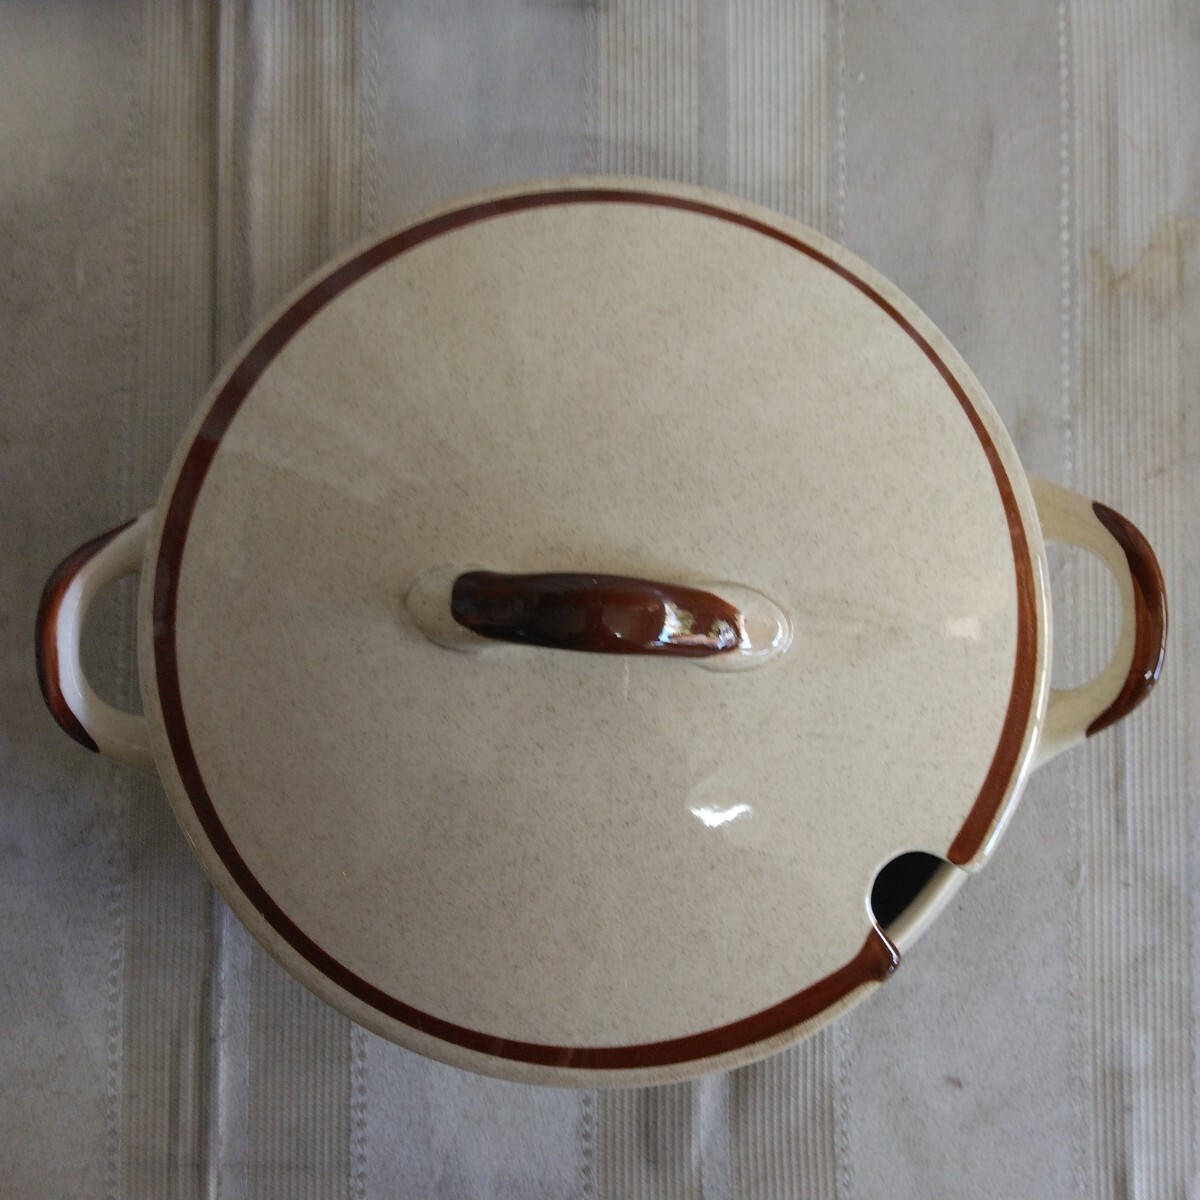 【 陣屋炻器 】カレー皿5枚 陶器鍋 セット 茶色縁取り 昭和レトロ 食器 中皿 シチュー皿 スープ皿_画像4